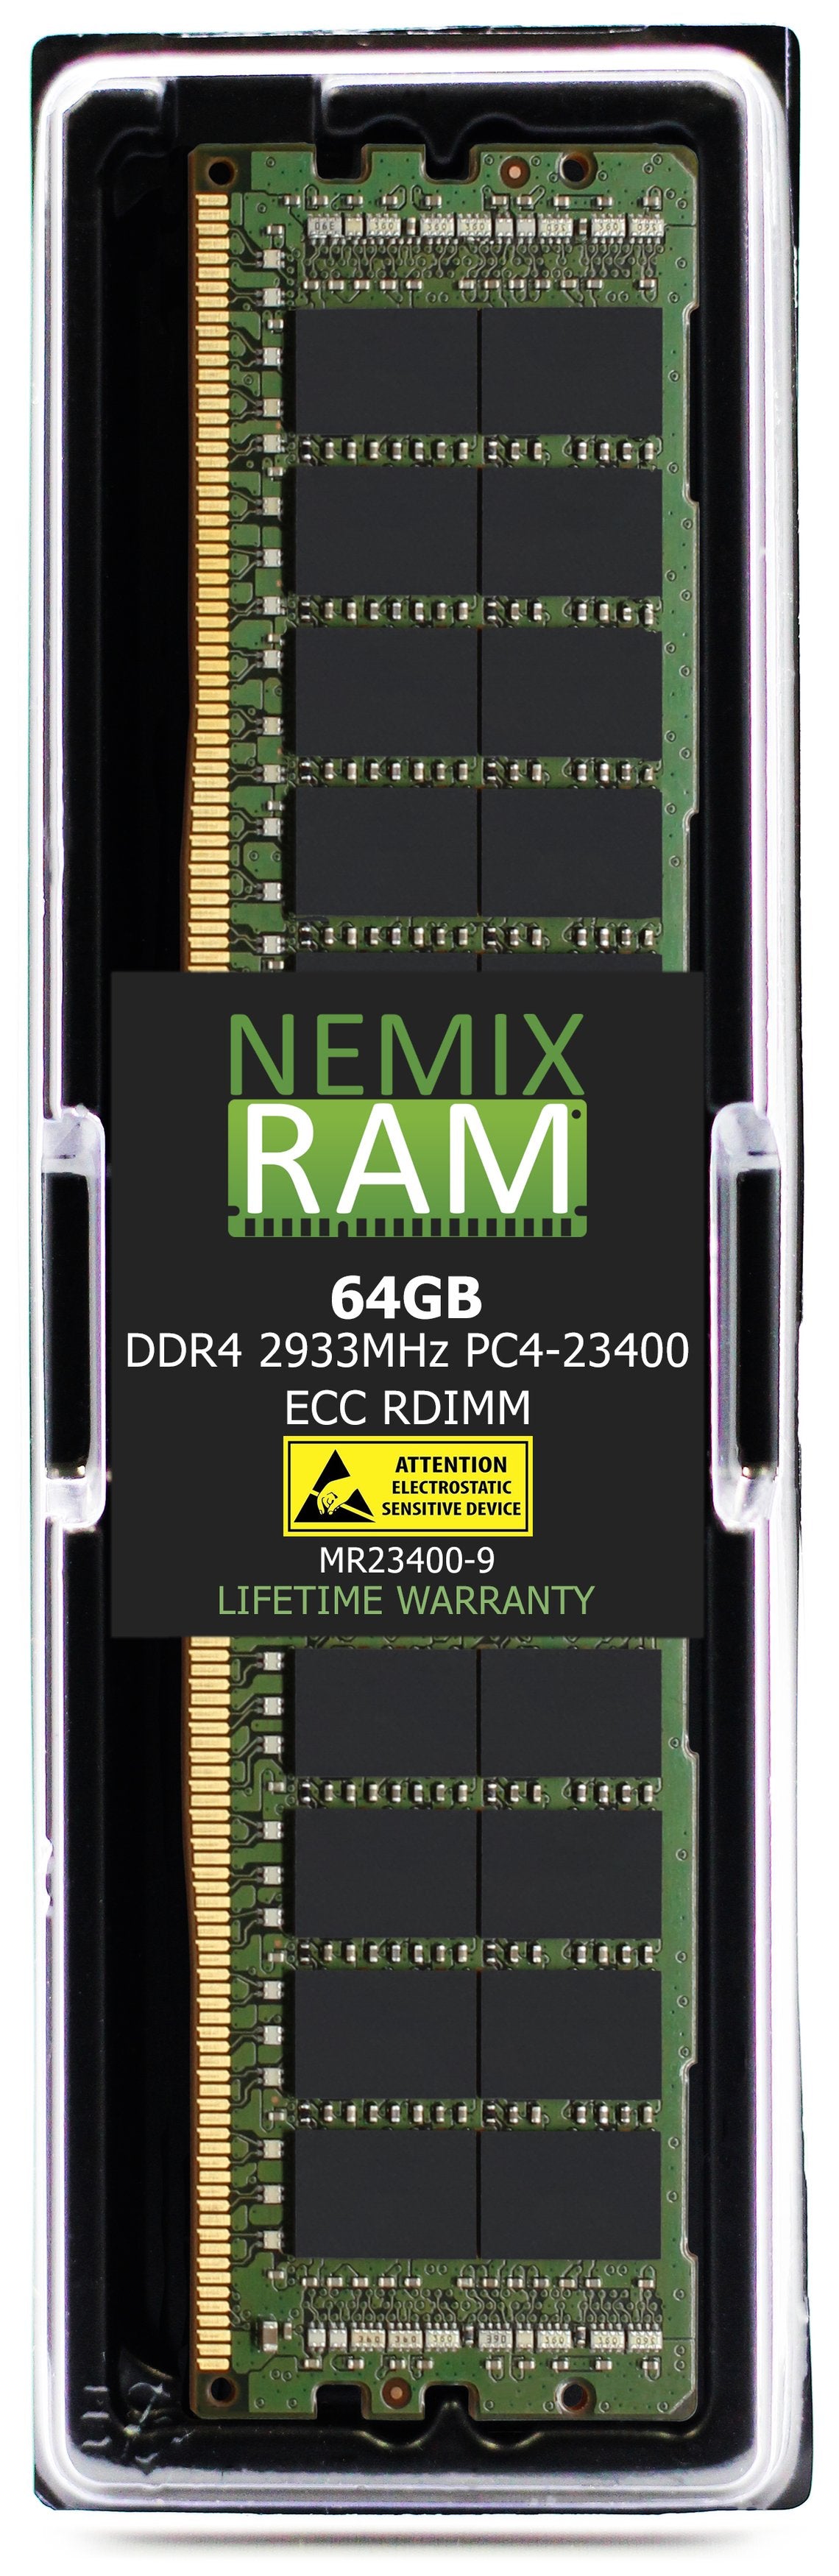 Hynix HMAA8GR7AJR4N-WM 64GB DDR4 2933MHZ PC4-23400 RDIMM Compatible Memory Module